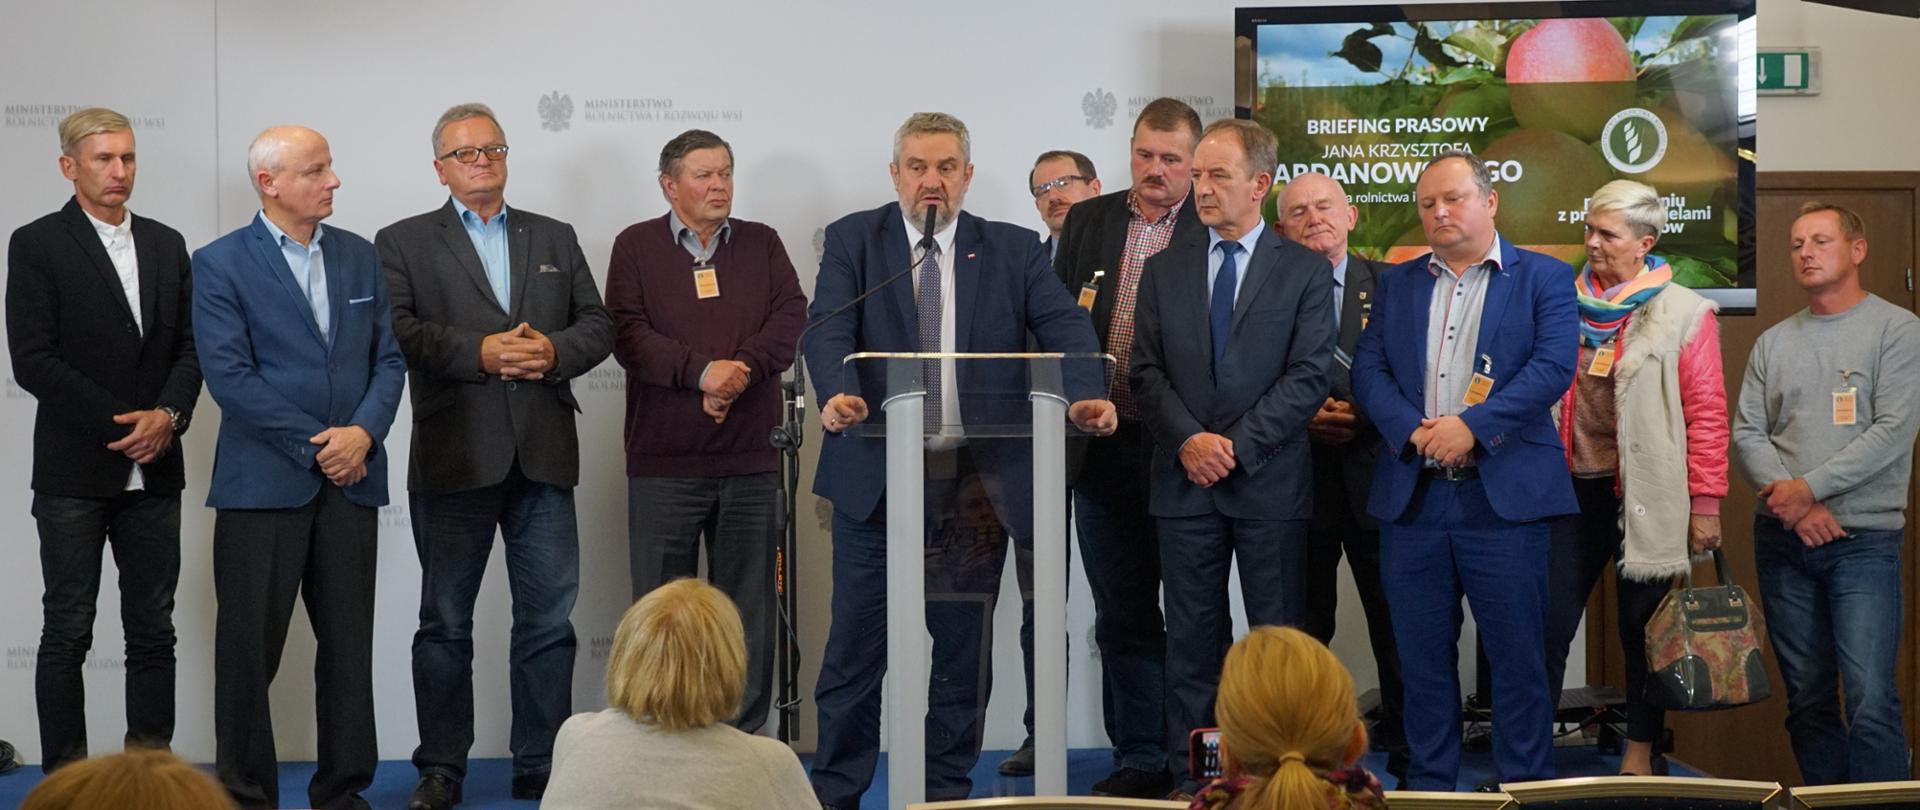 Minister Jan Krzysztof Ardanowski oraz przedstawiciele sadowników podczas briefingu prasowego